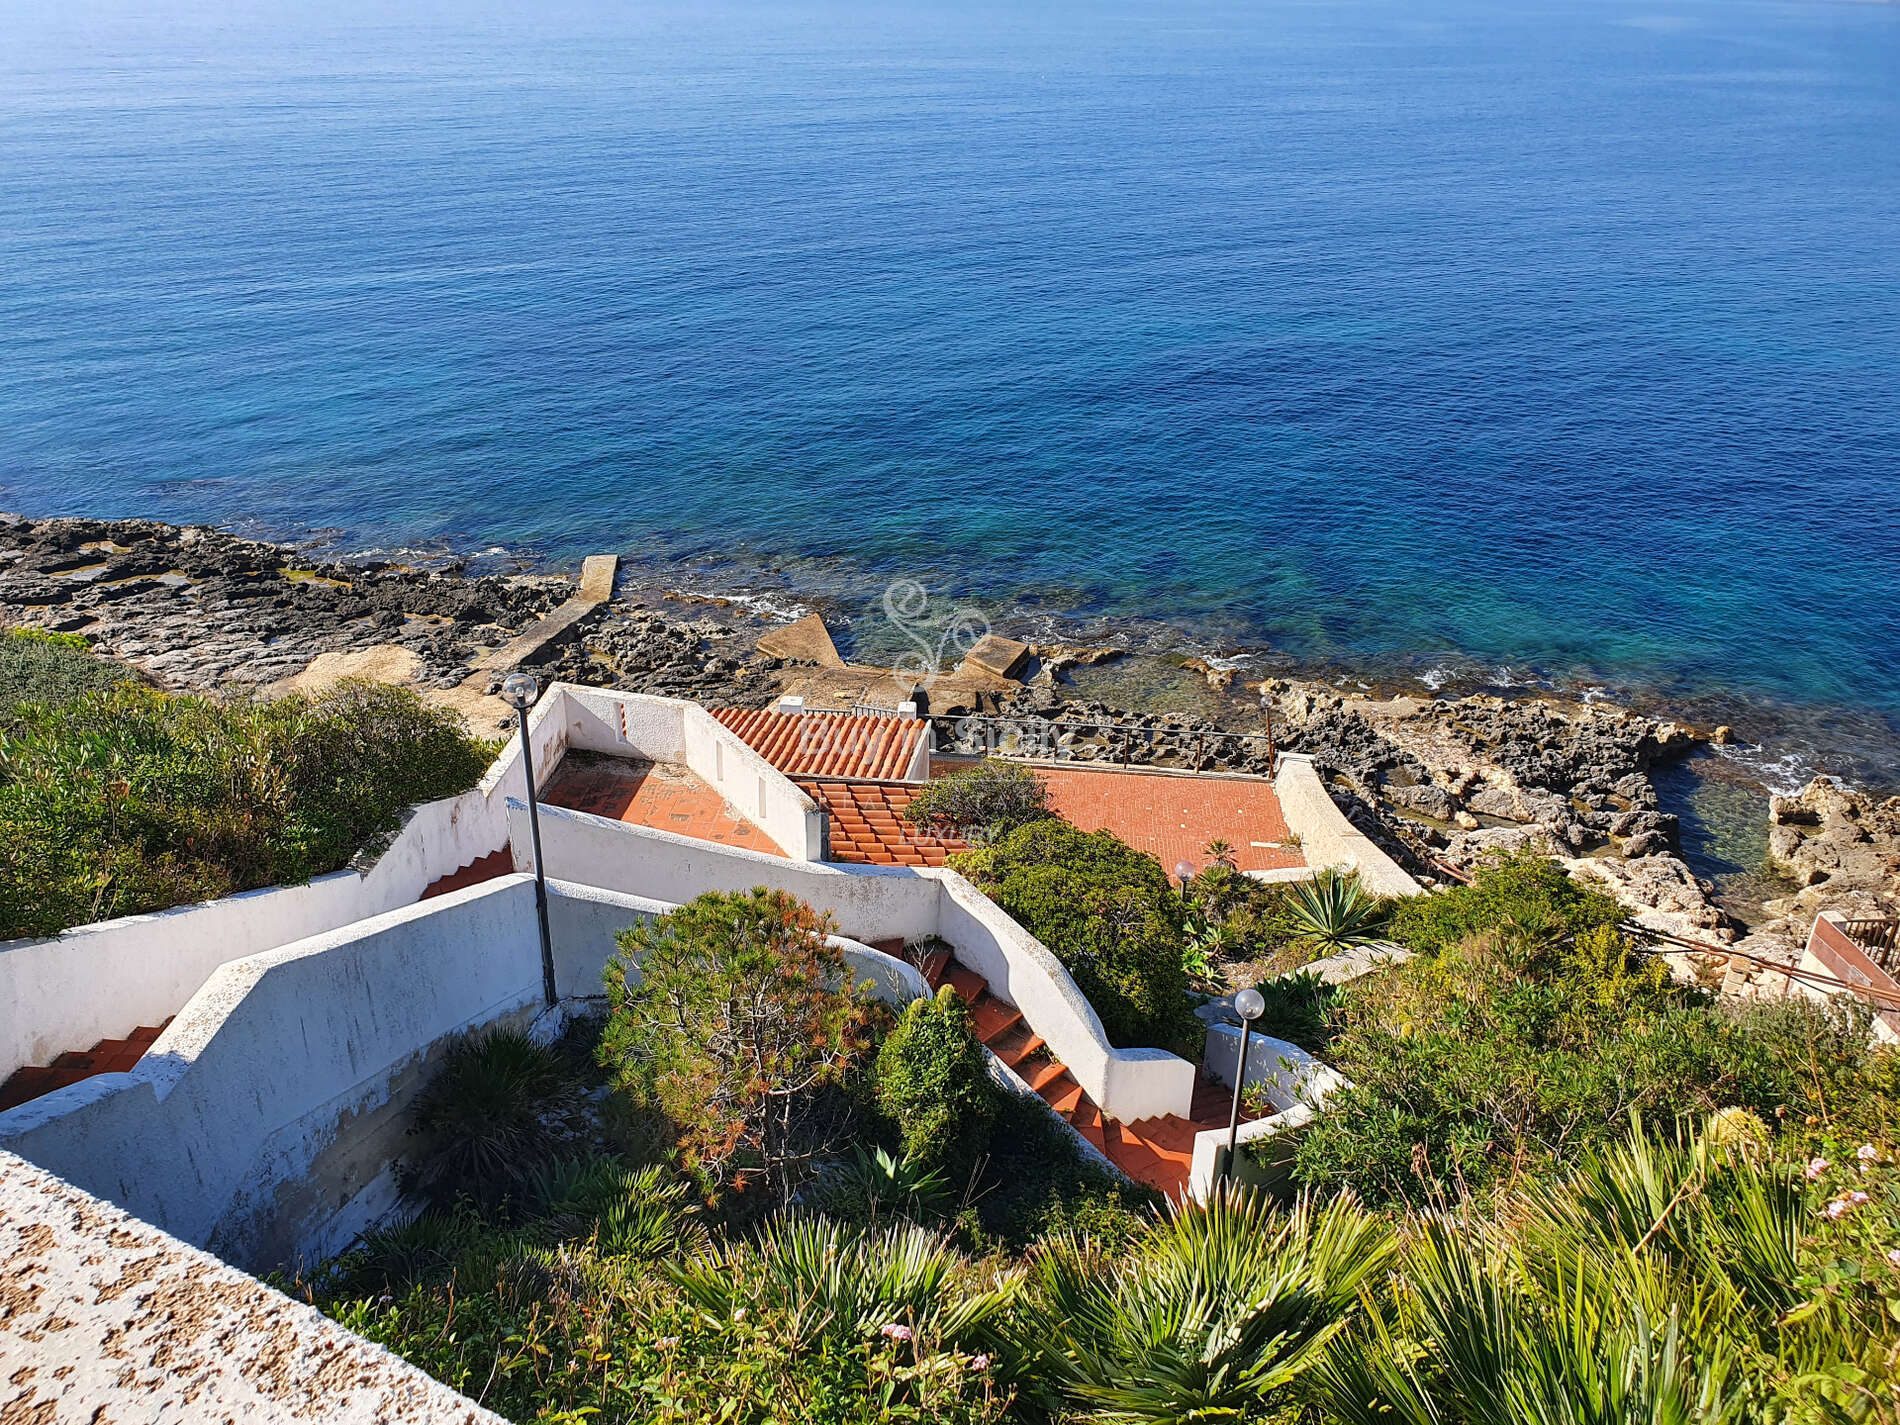 Splendida villa sul mare, panorama mozzafiato, sita nella riserva naturale del Plemmirio - Siracusa